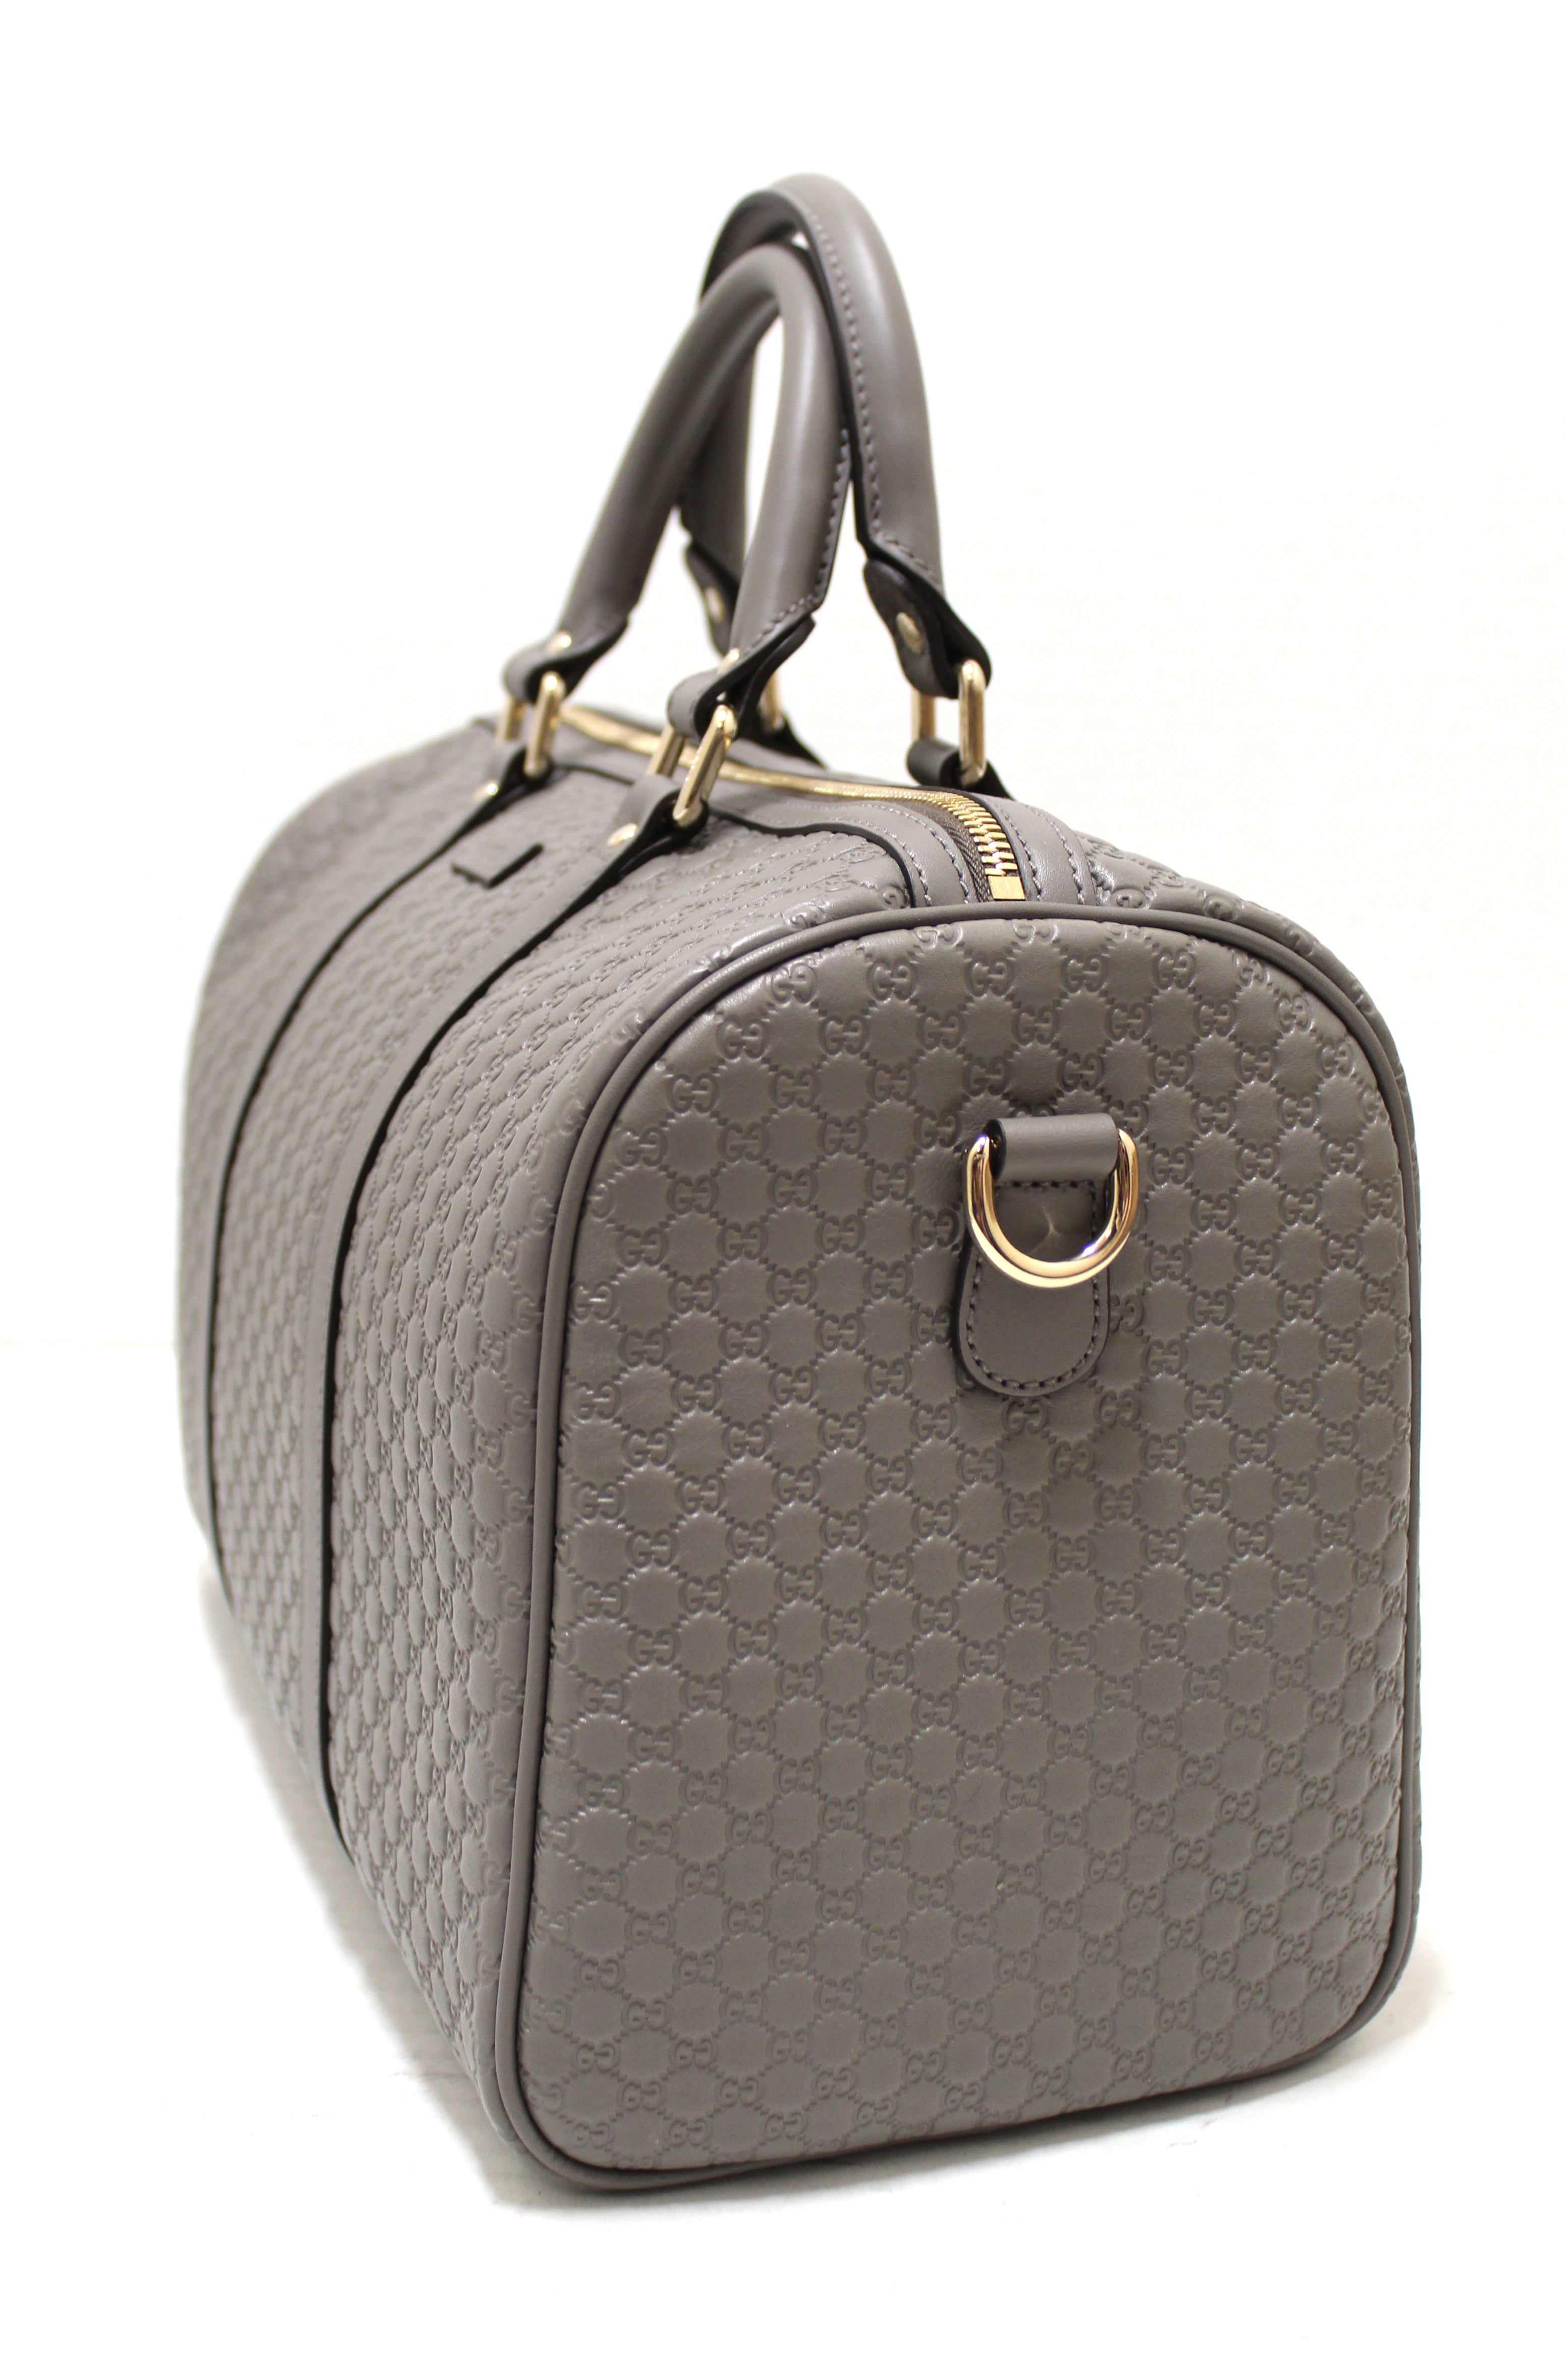 Authentic New Gucci Grey Micro-Guccissima Leather Boston Bag with Strap 449646